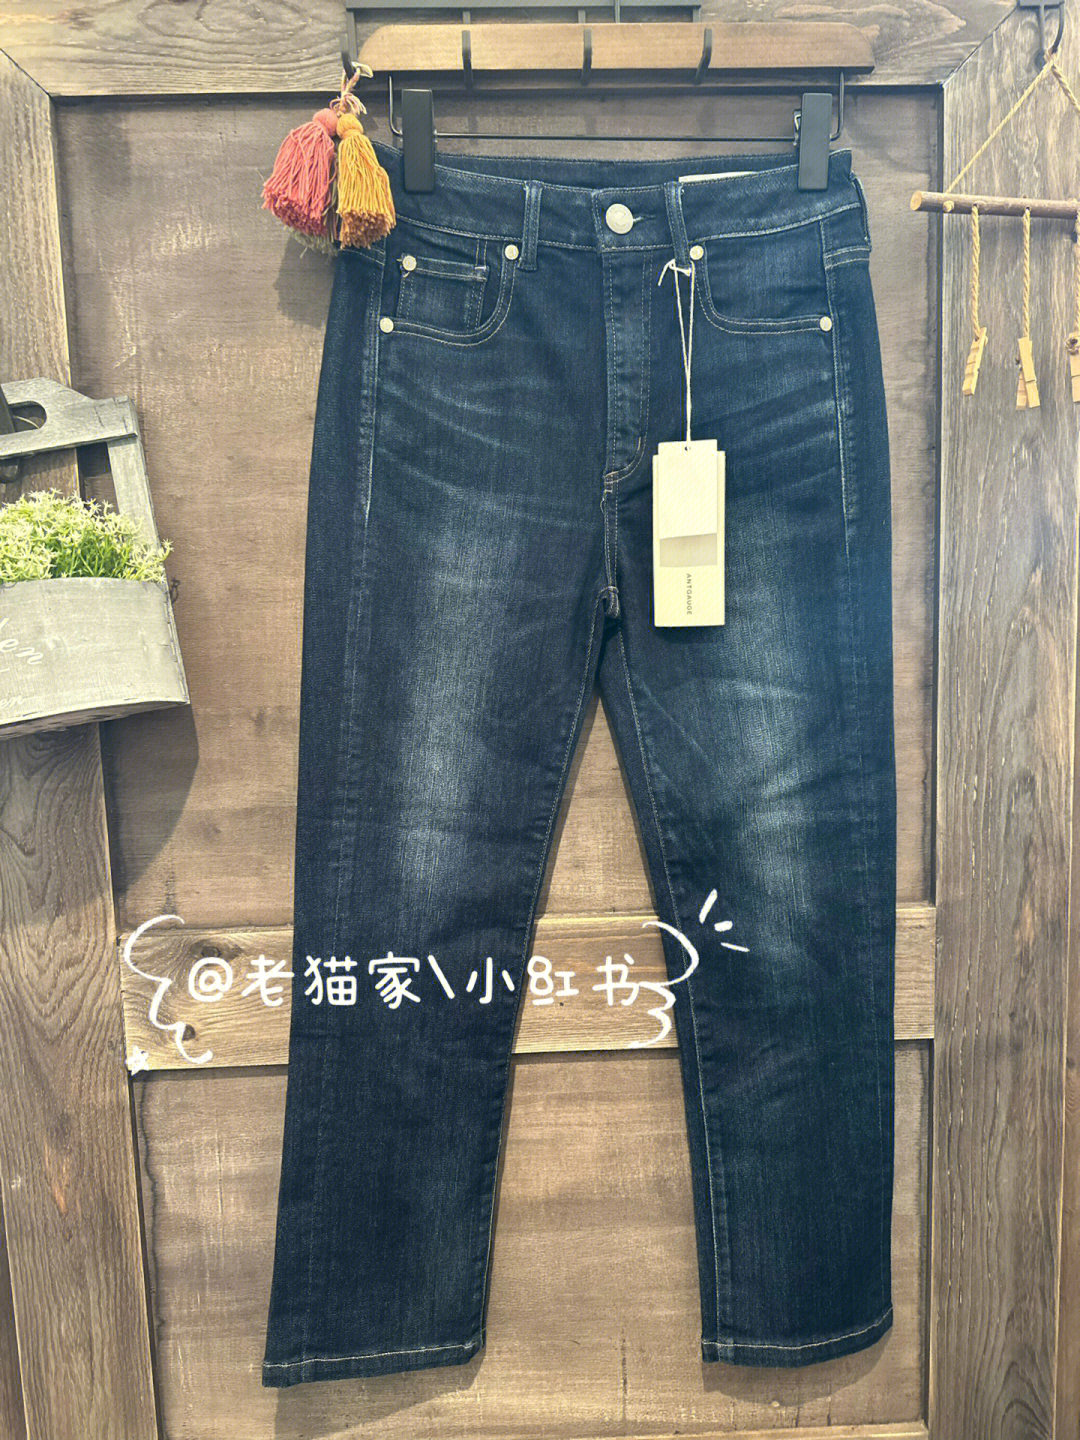 牛仔裤日本品牌大全图片